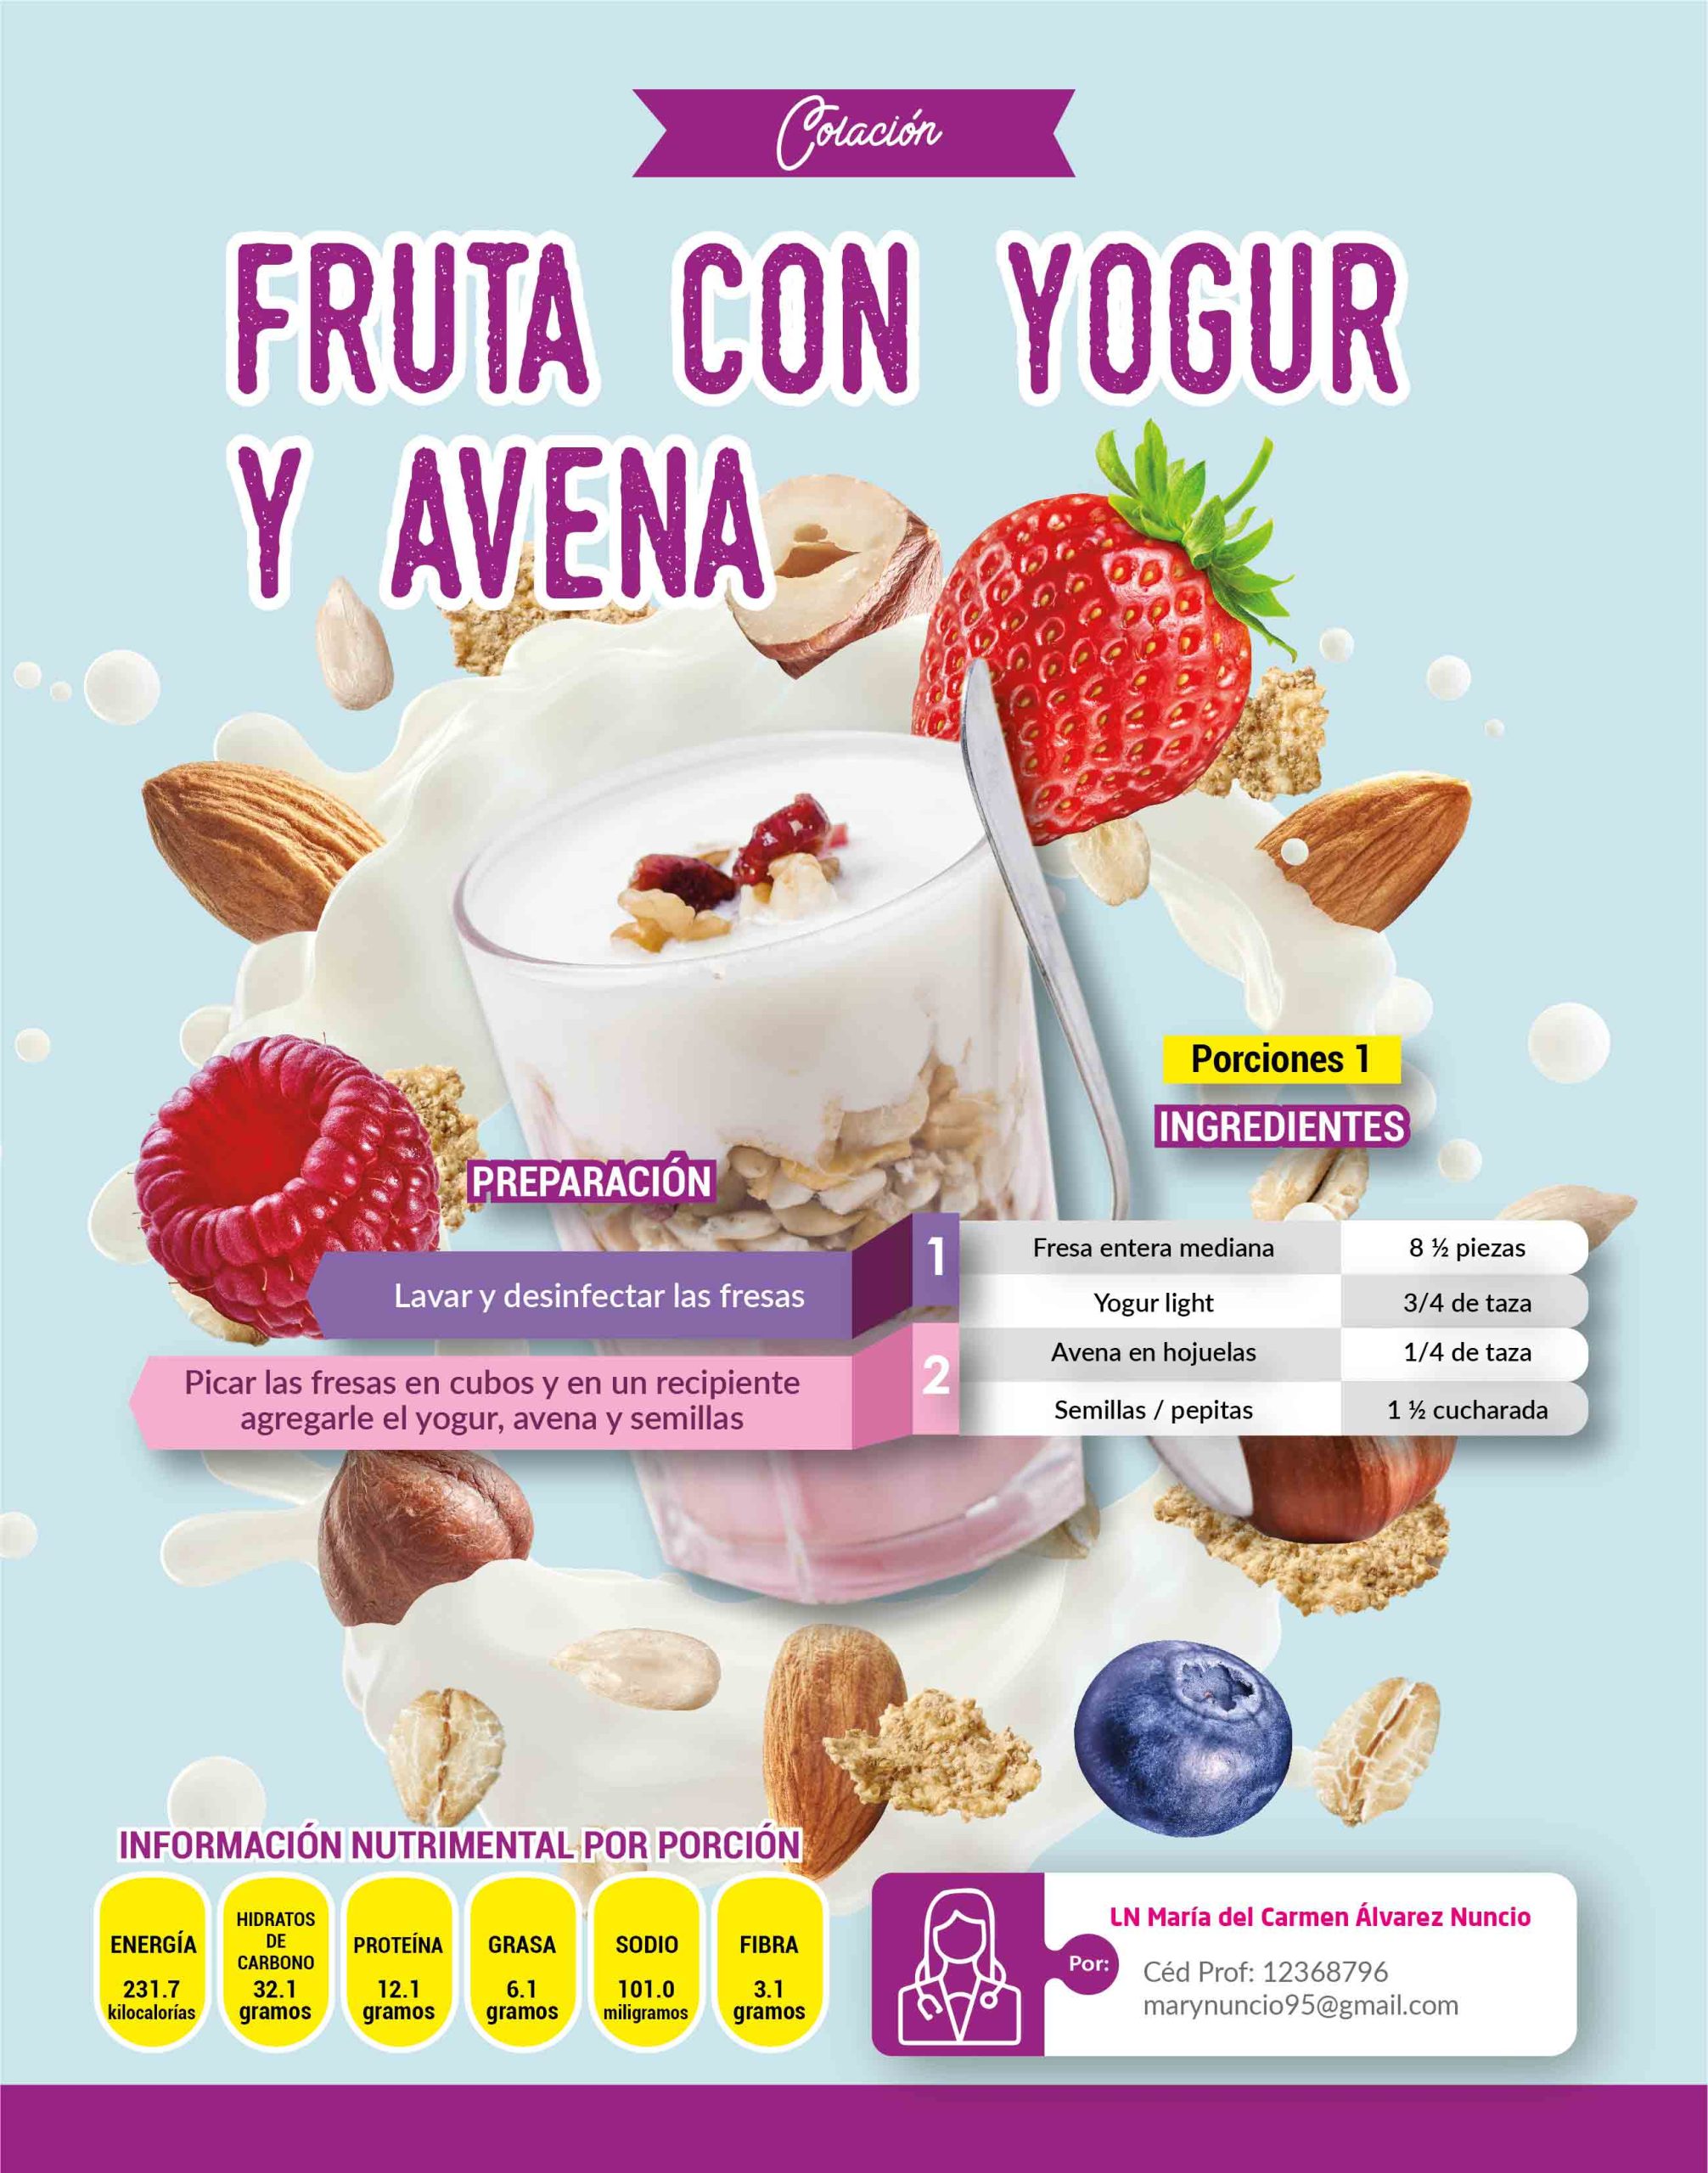 Deliciosa receta de Fruta con yogur con informanción nutrimental,